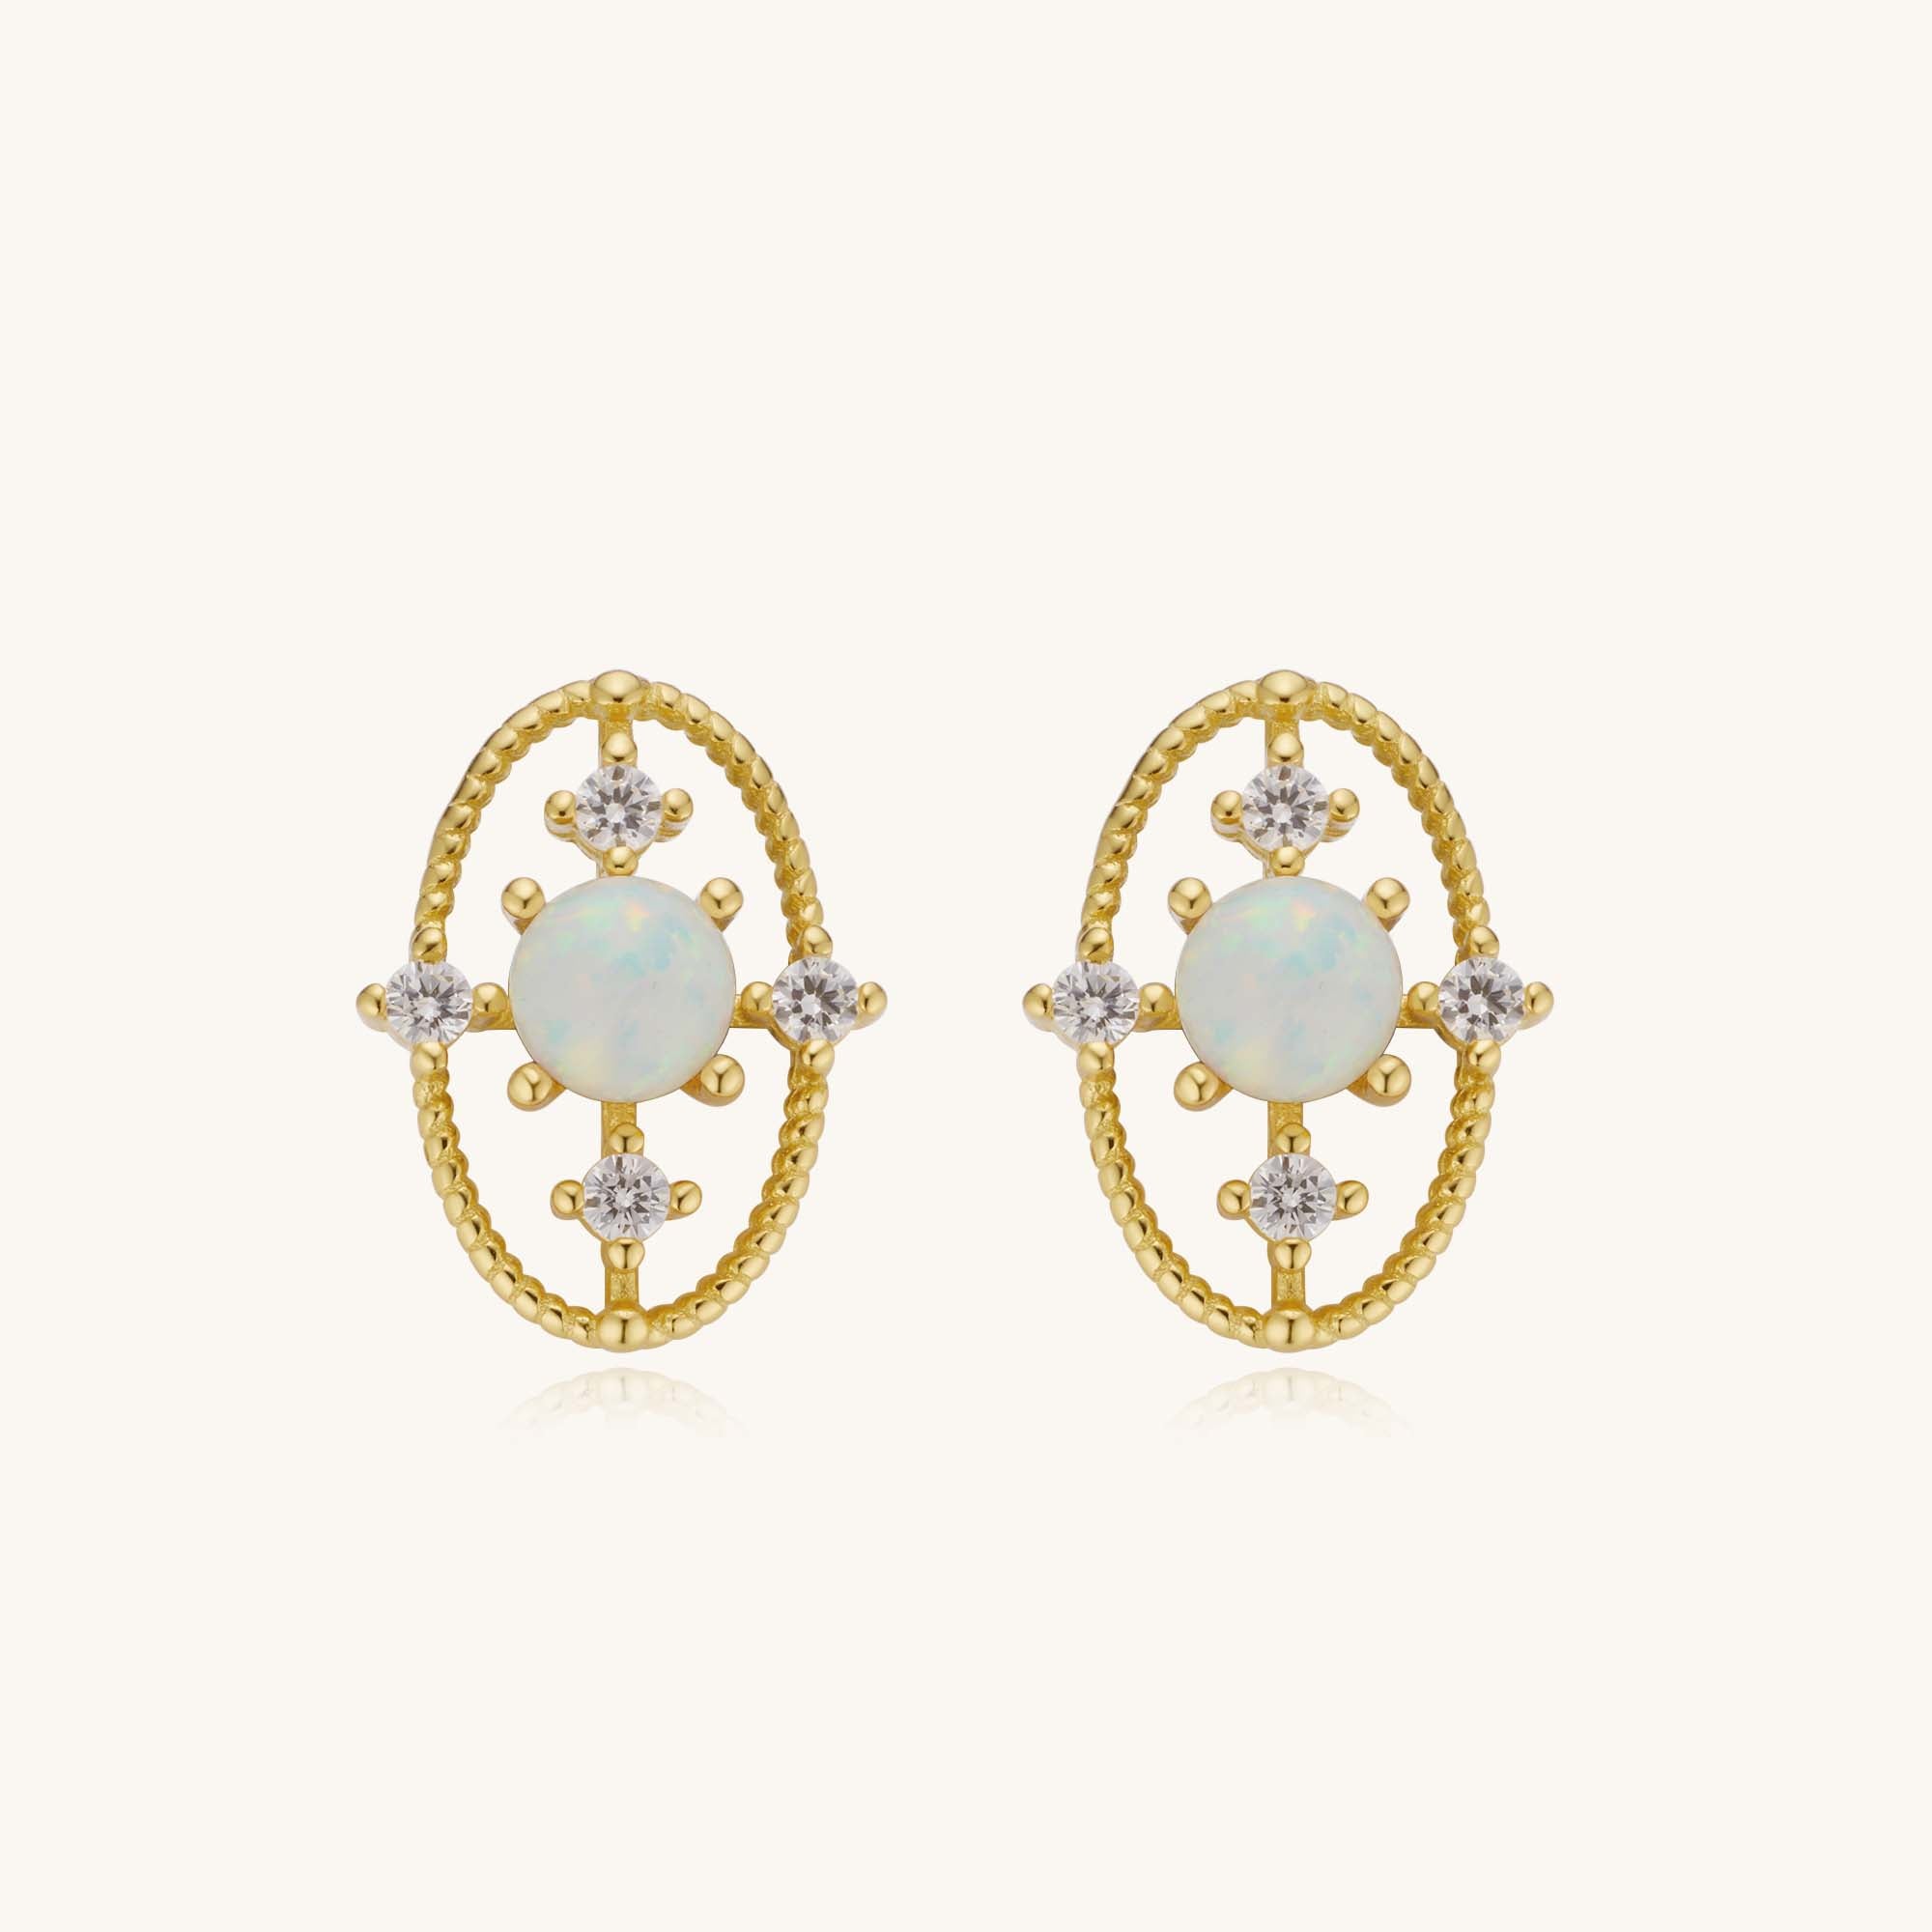 Colorful Moonstone Diamond Oval Cross Stud Earrings – Kira LaLa